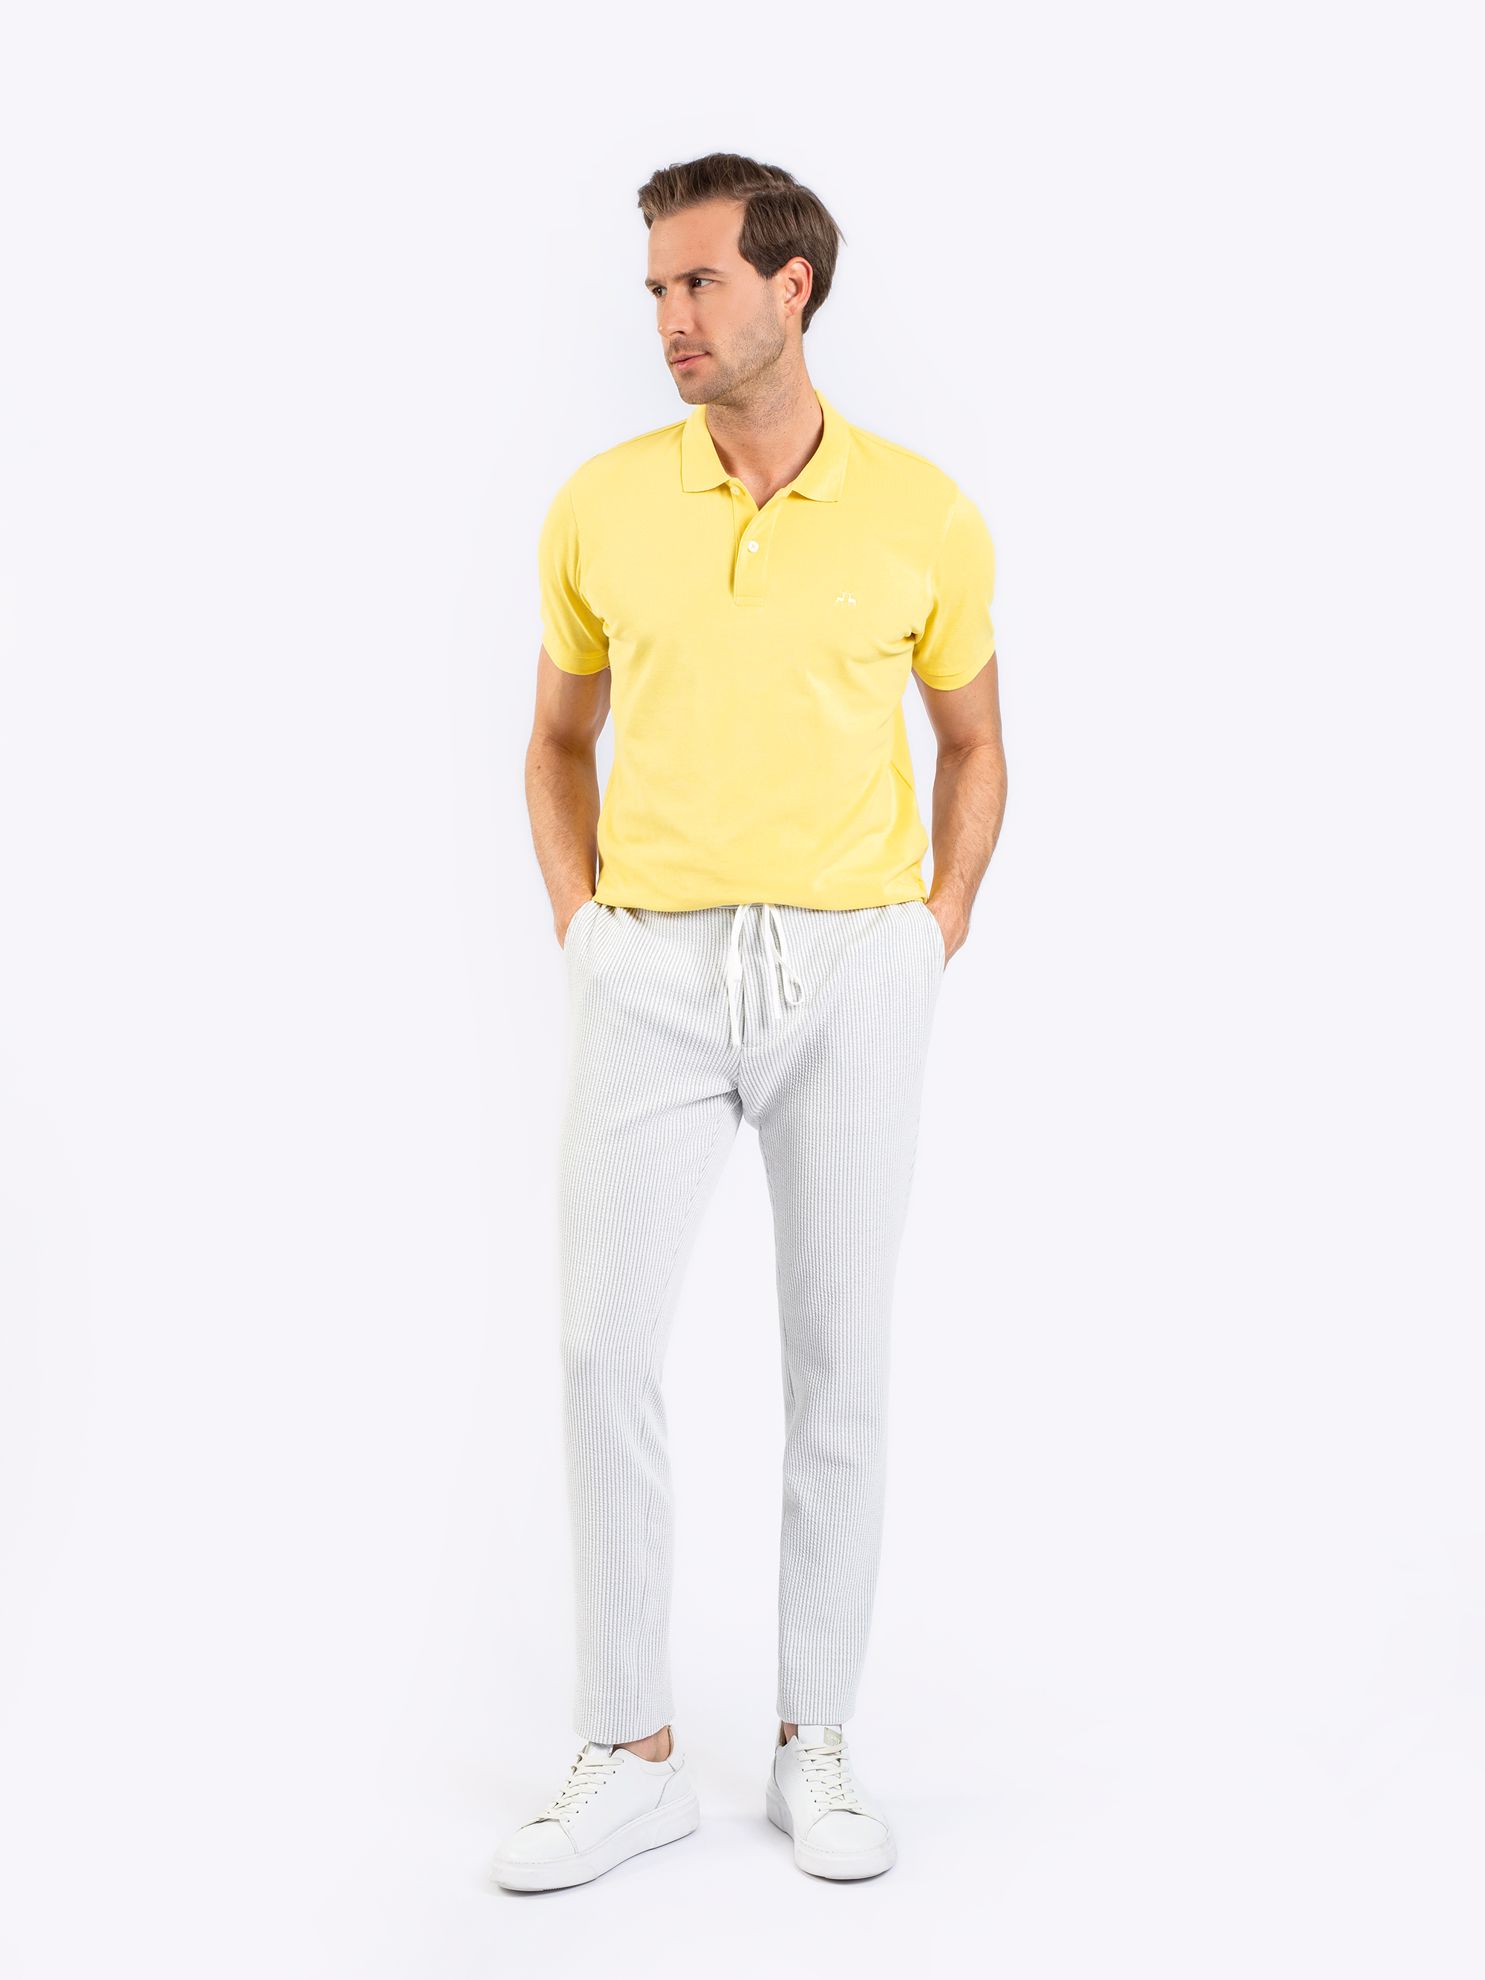 Karaca Erkek Slim Fit Polo Yaka Tişört-Sarı. ürün görseli